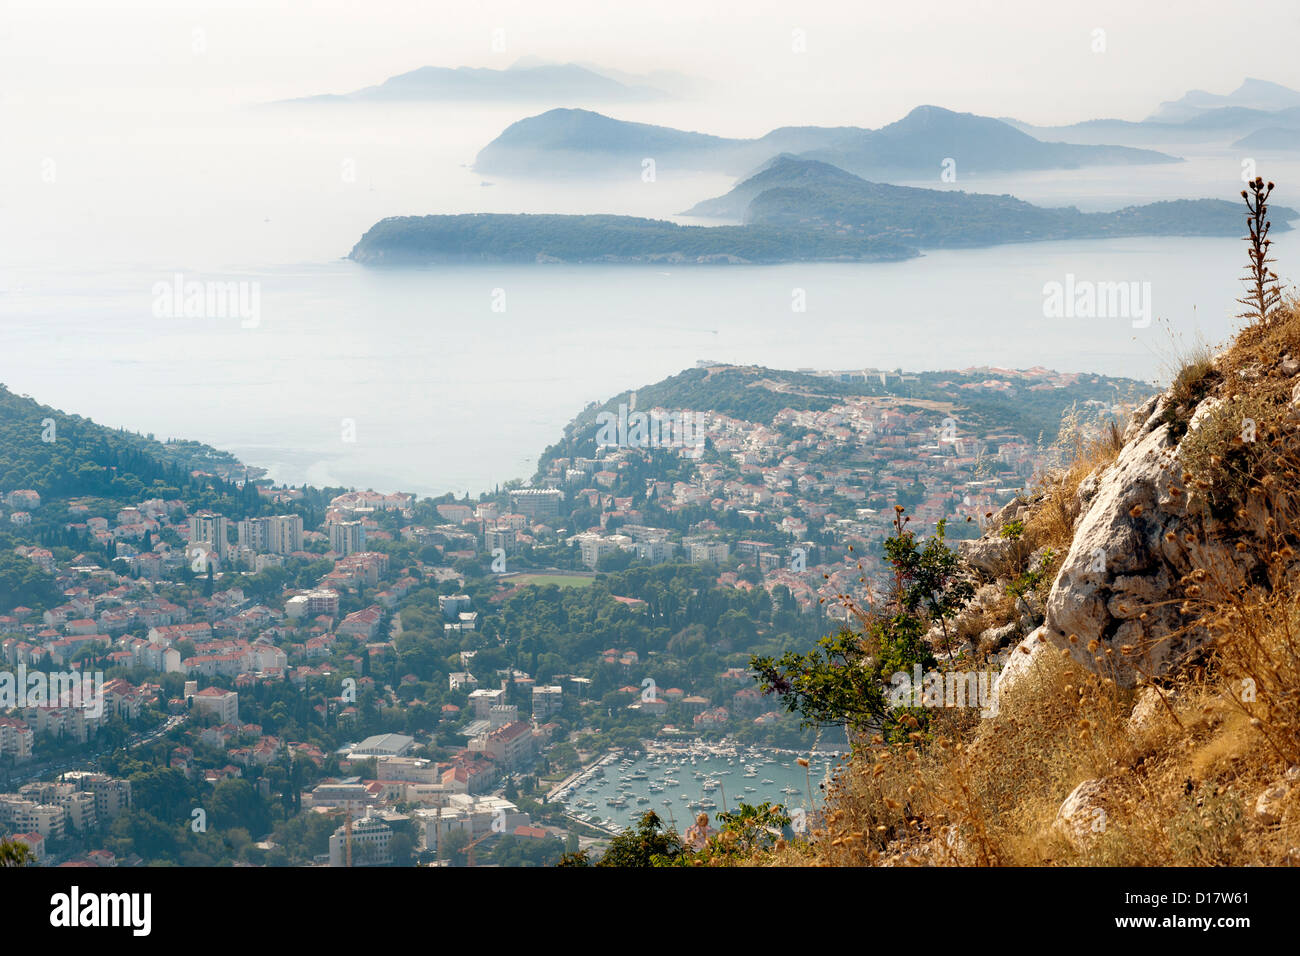 Vue depuis le mont Srd sur une partie de la ville de Dubrovnik et les îles dans la mer Adriatique en Croatie. Banque D'Images